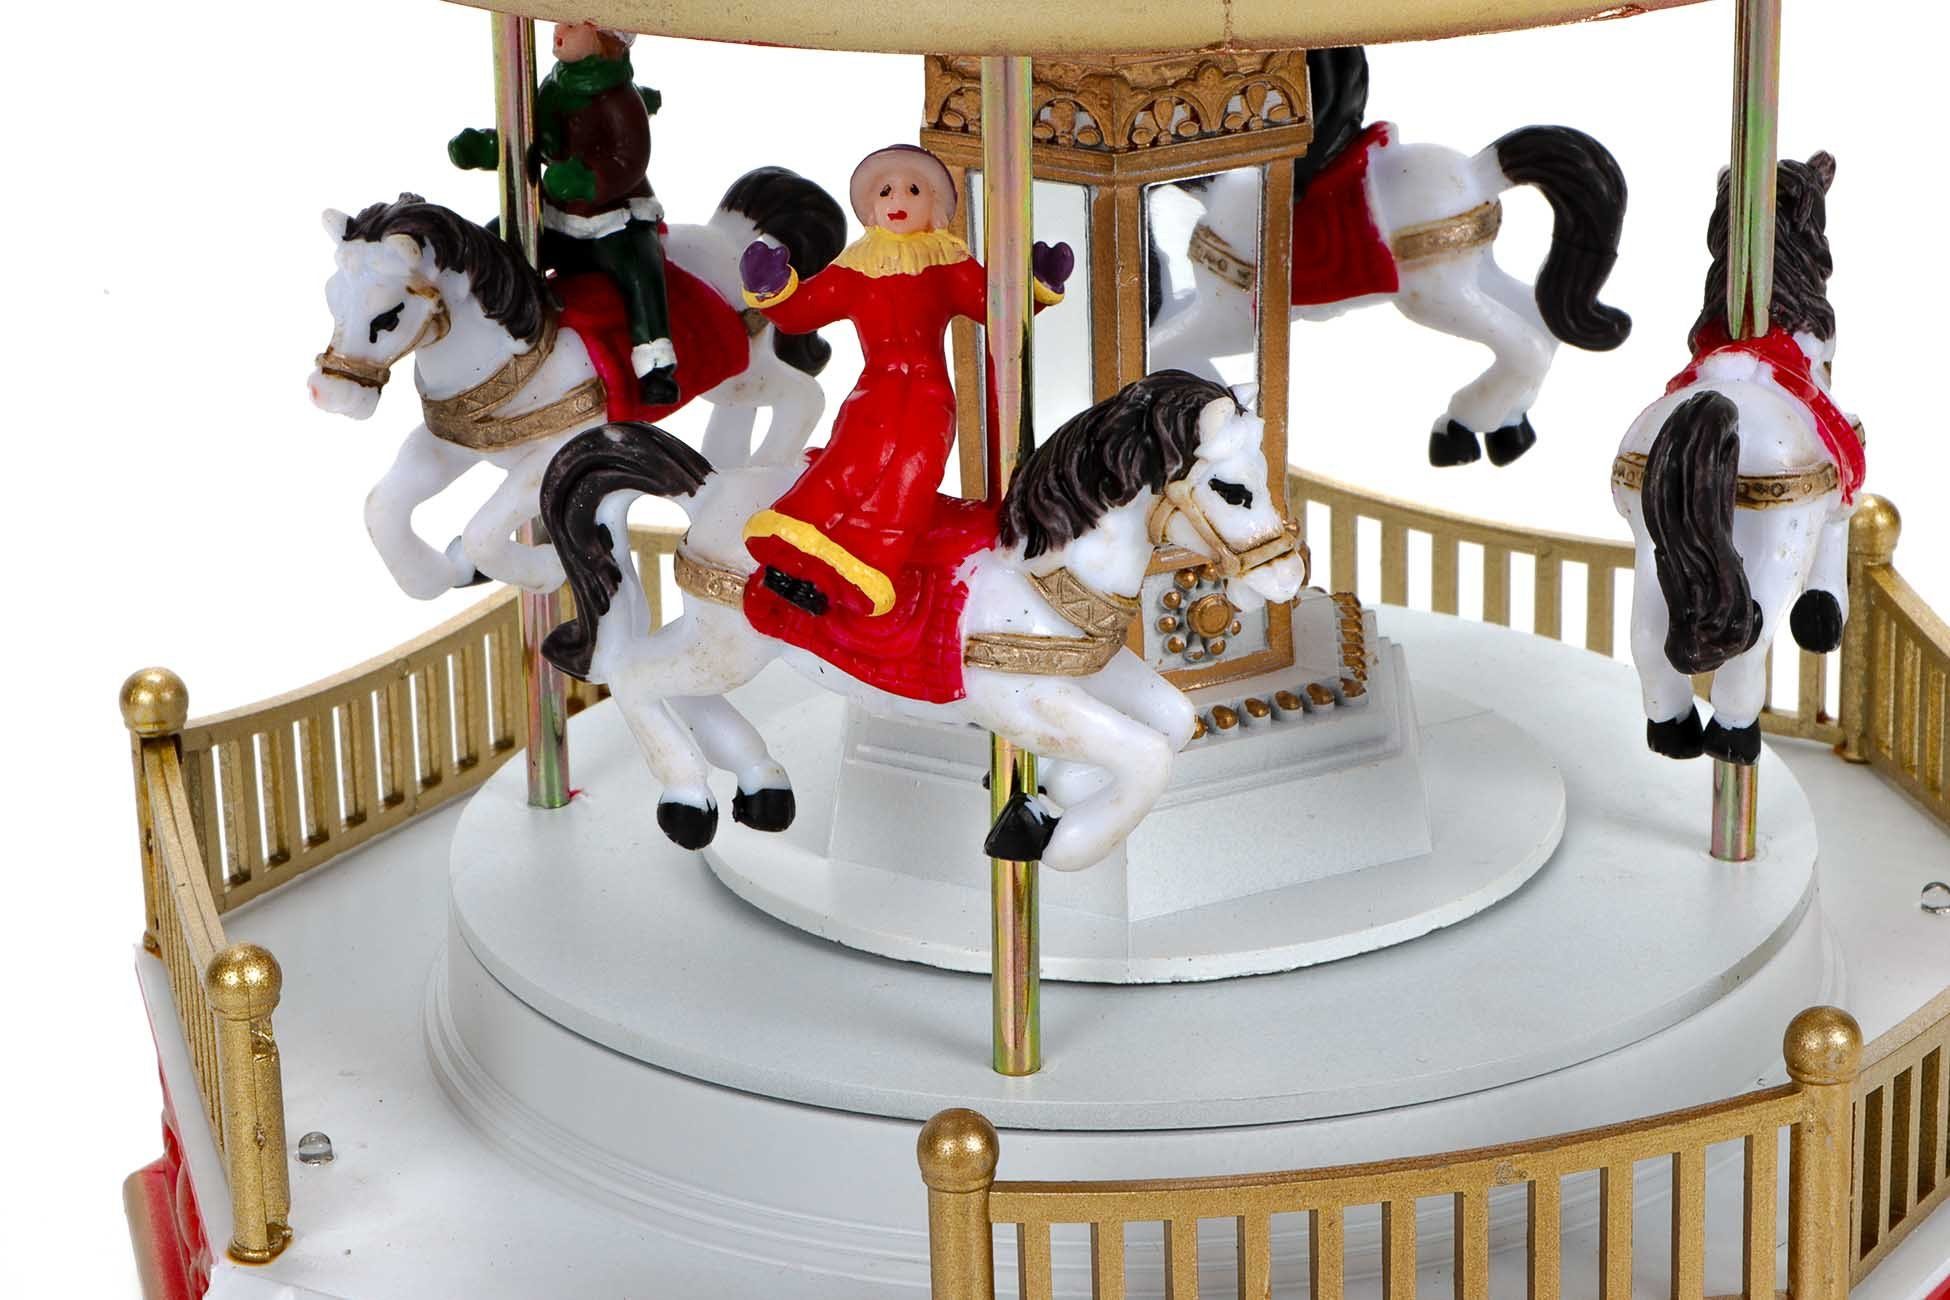 Drehendes LuVille Weihnachtskarussell, mit 3 Jahrmarktkarussell Weihnachtsszene Karussellpferden, Fahrgästen 4